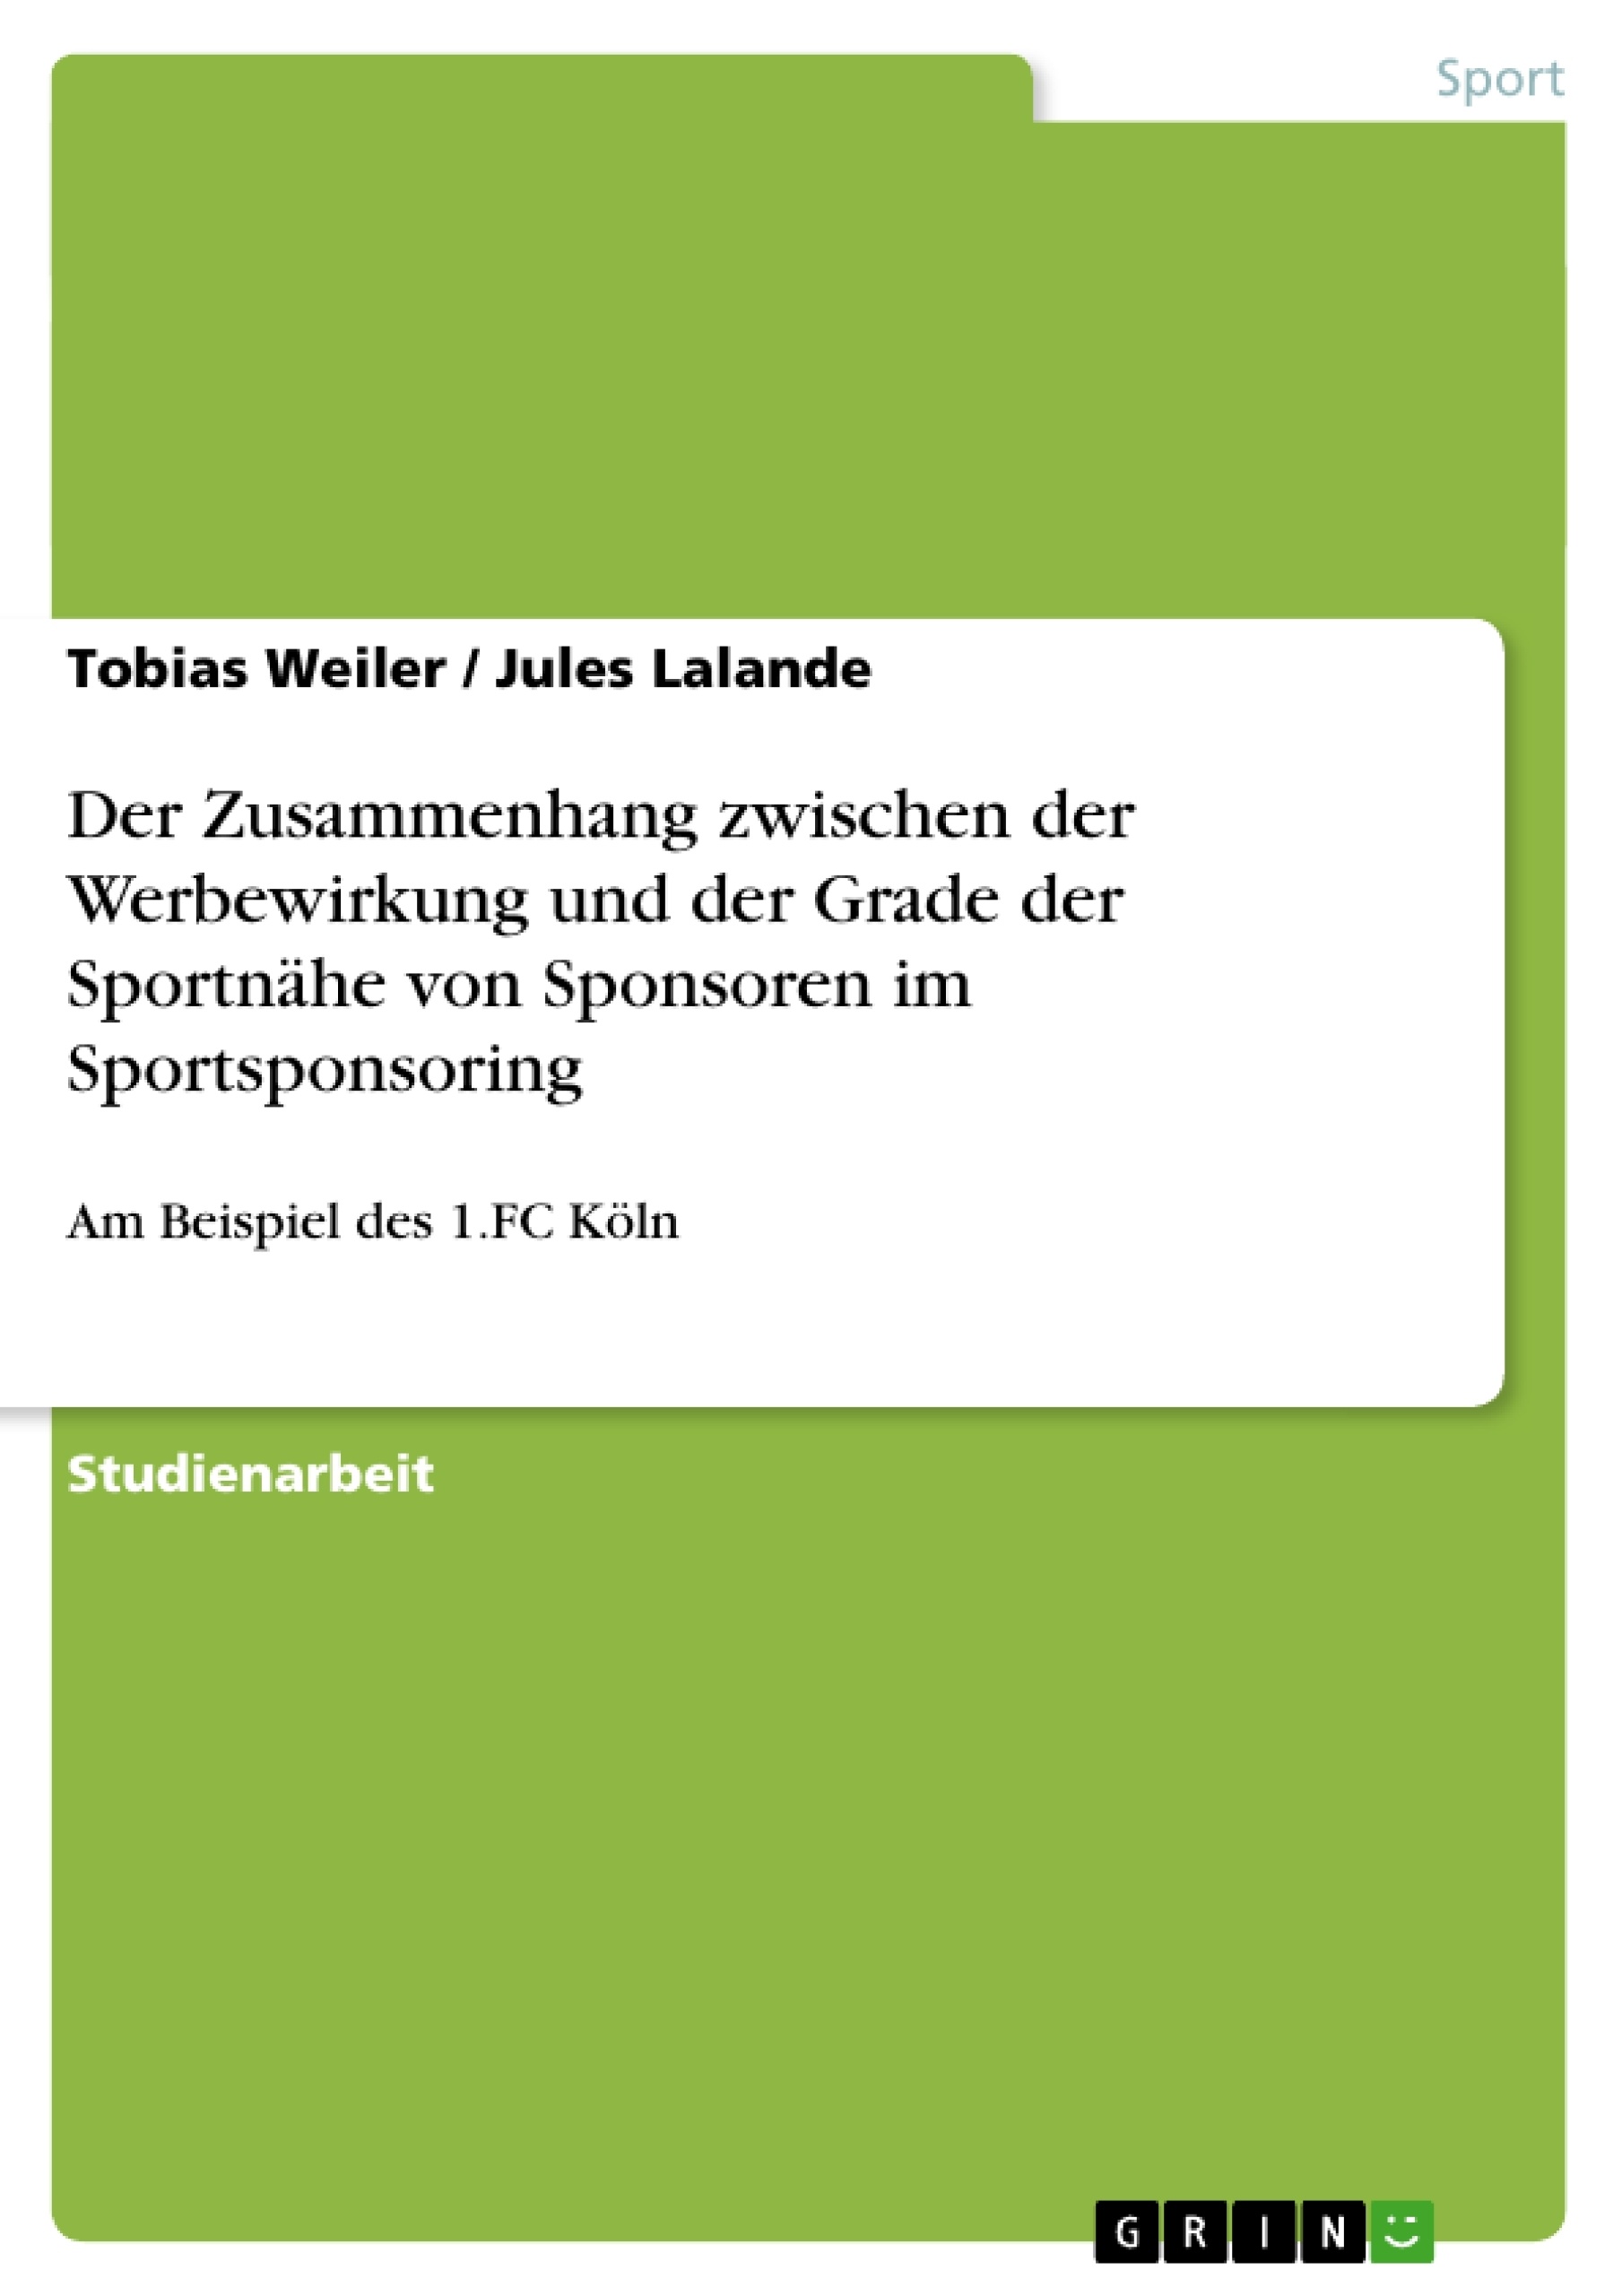 Título: Der Zusammenhang zwischen der Werbewirkung und der Grade der Sportnähe von Sponsoren im Sportsponsoring